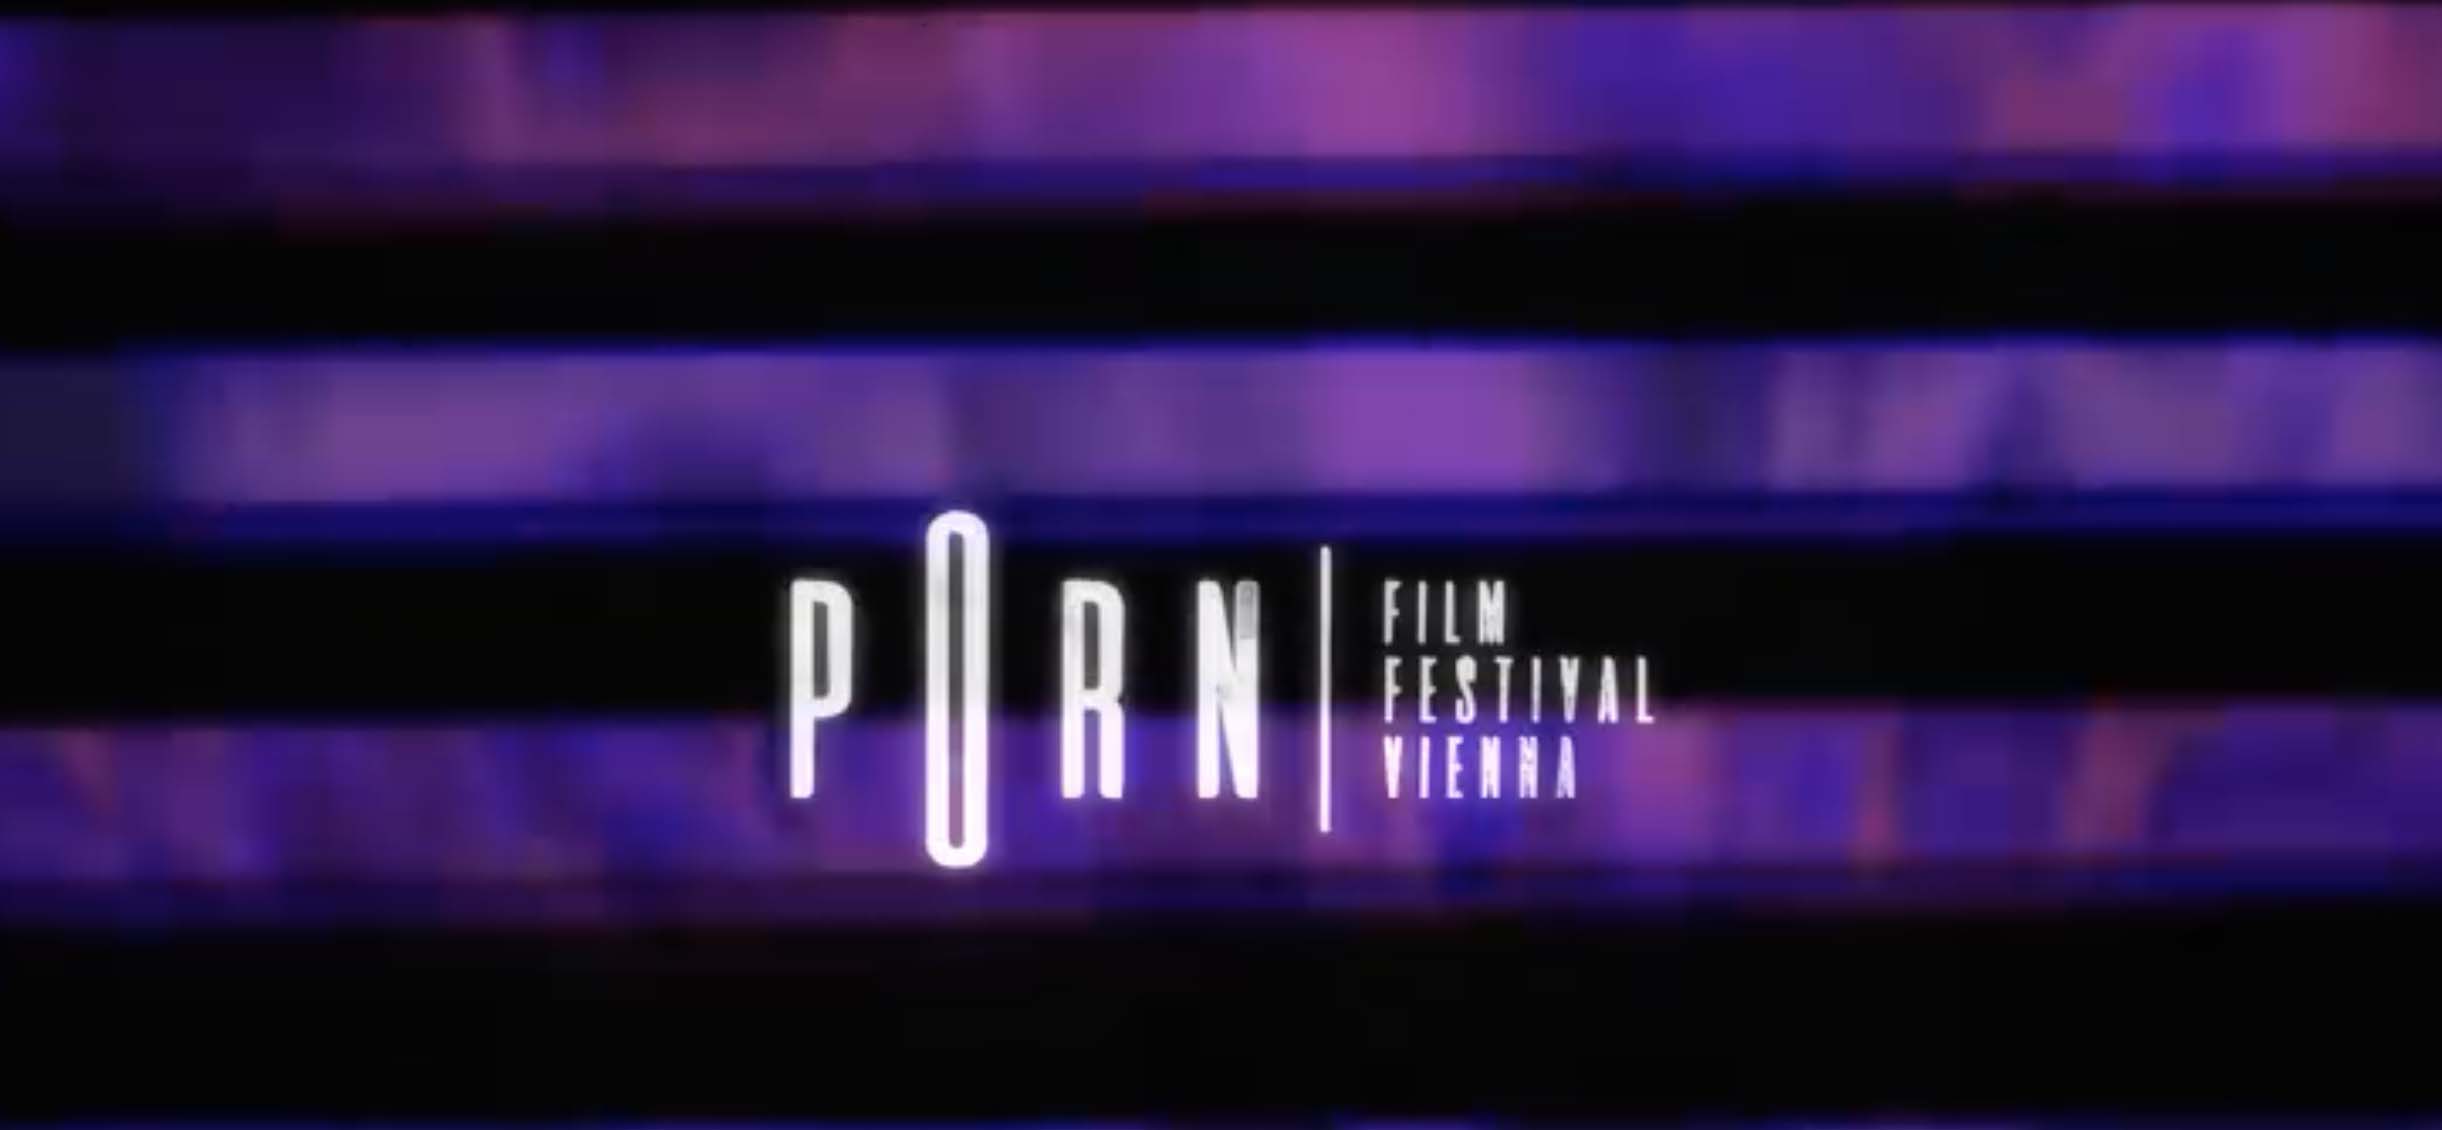 Porn Film Festival Vienna 2019 - Vienna WÃ¼rstelstand